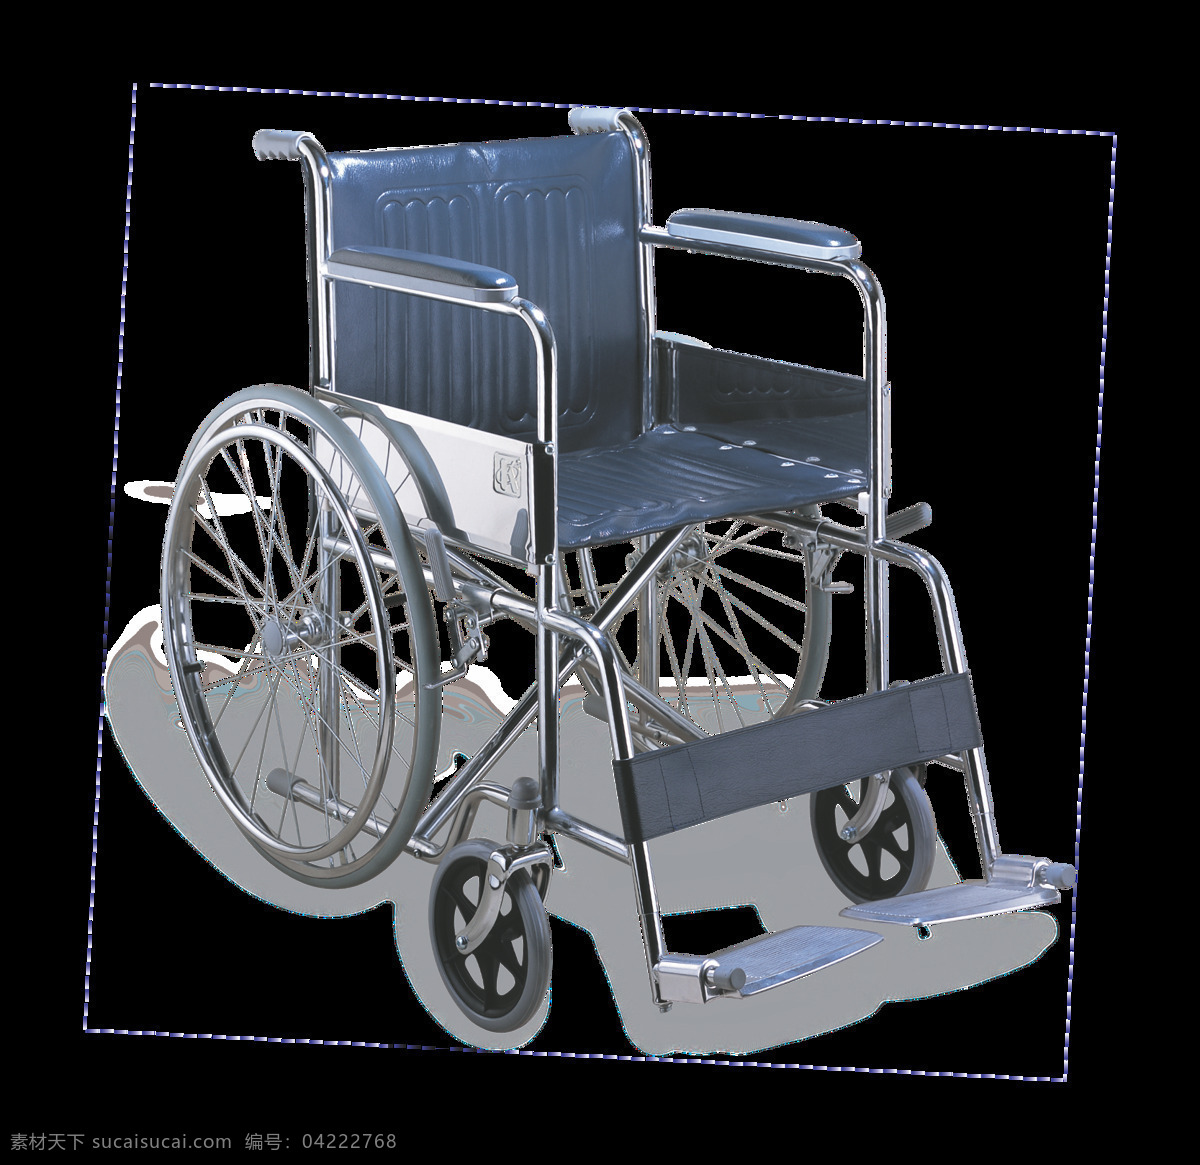 蓝色 轮椅 免 抠 透明 图 层 木轮椅 越野轮椅 小轮轮椅 手摇轮椅 轮椅轮子 车载轮椅 老年轮椅 竞速轮椅 轮椅设计 残疾轮椅 折叠轮椅 智能轮椅 医院轮椅 轮椅图片